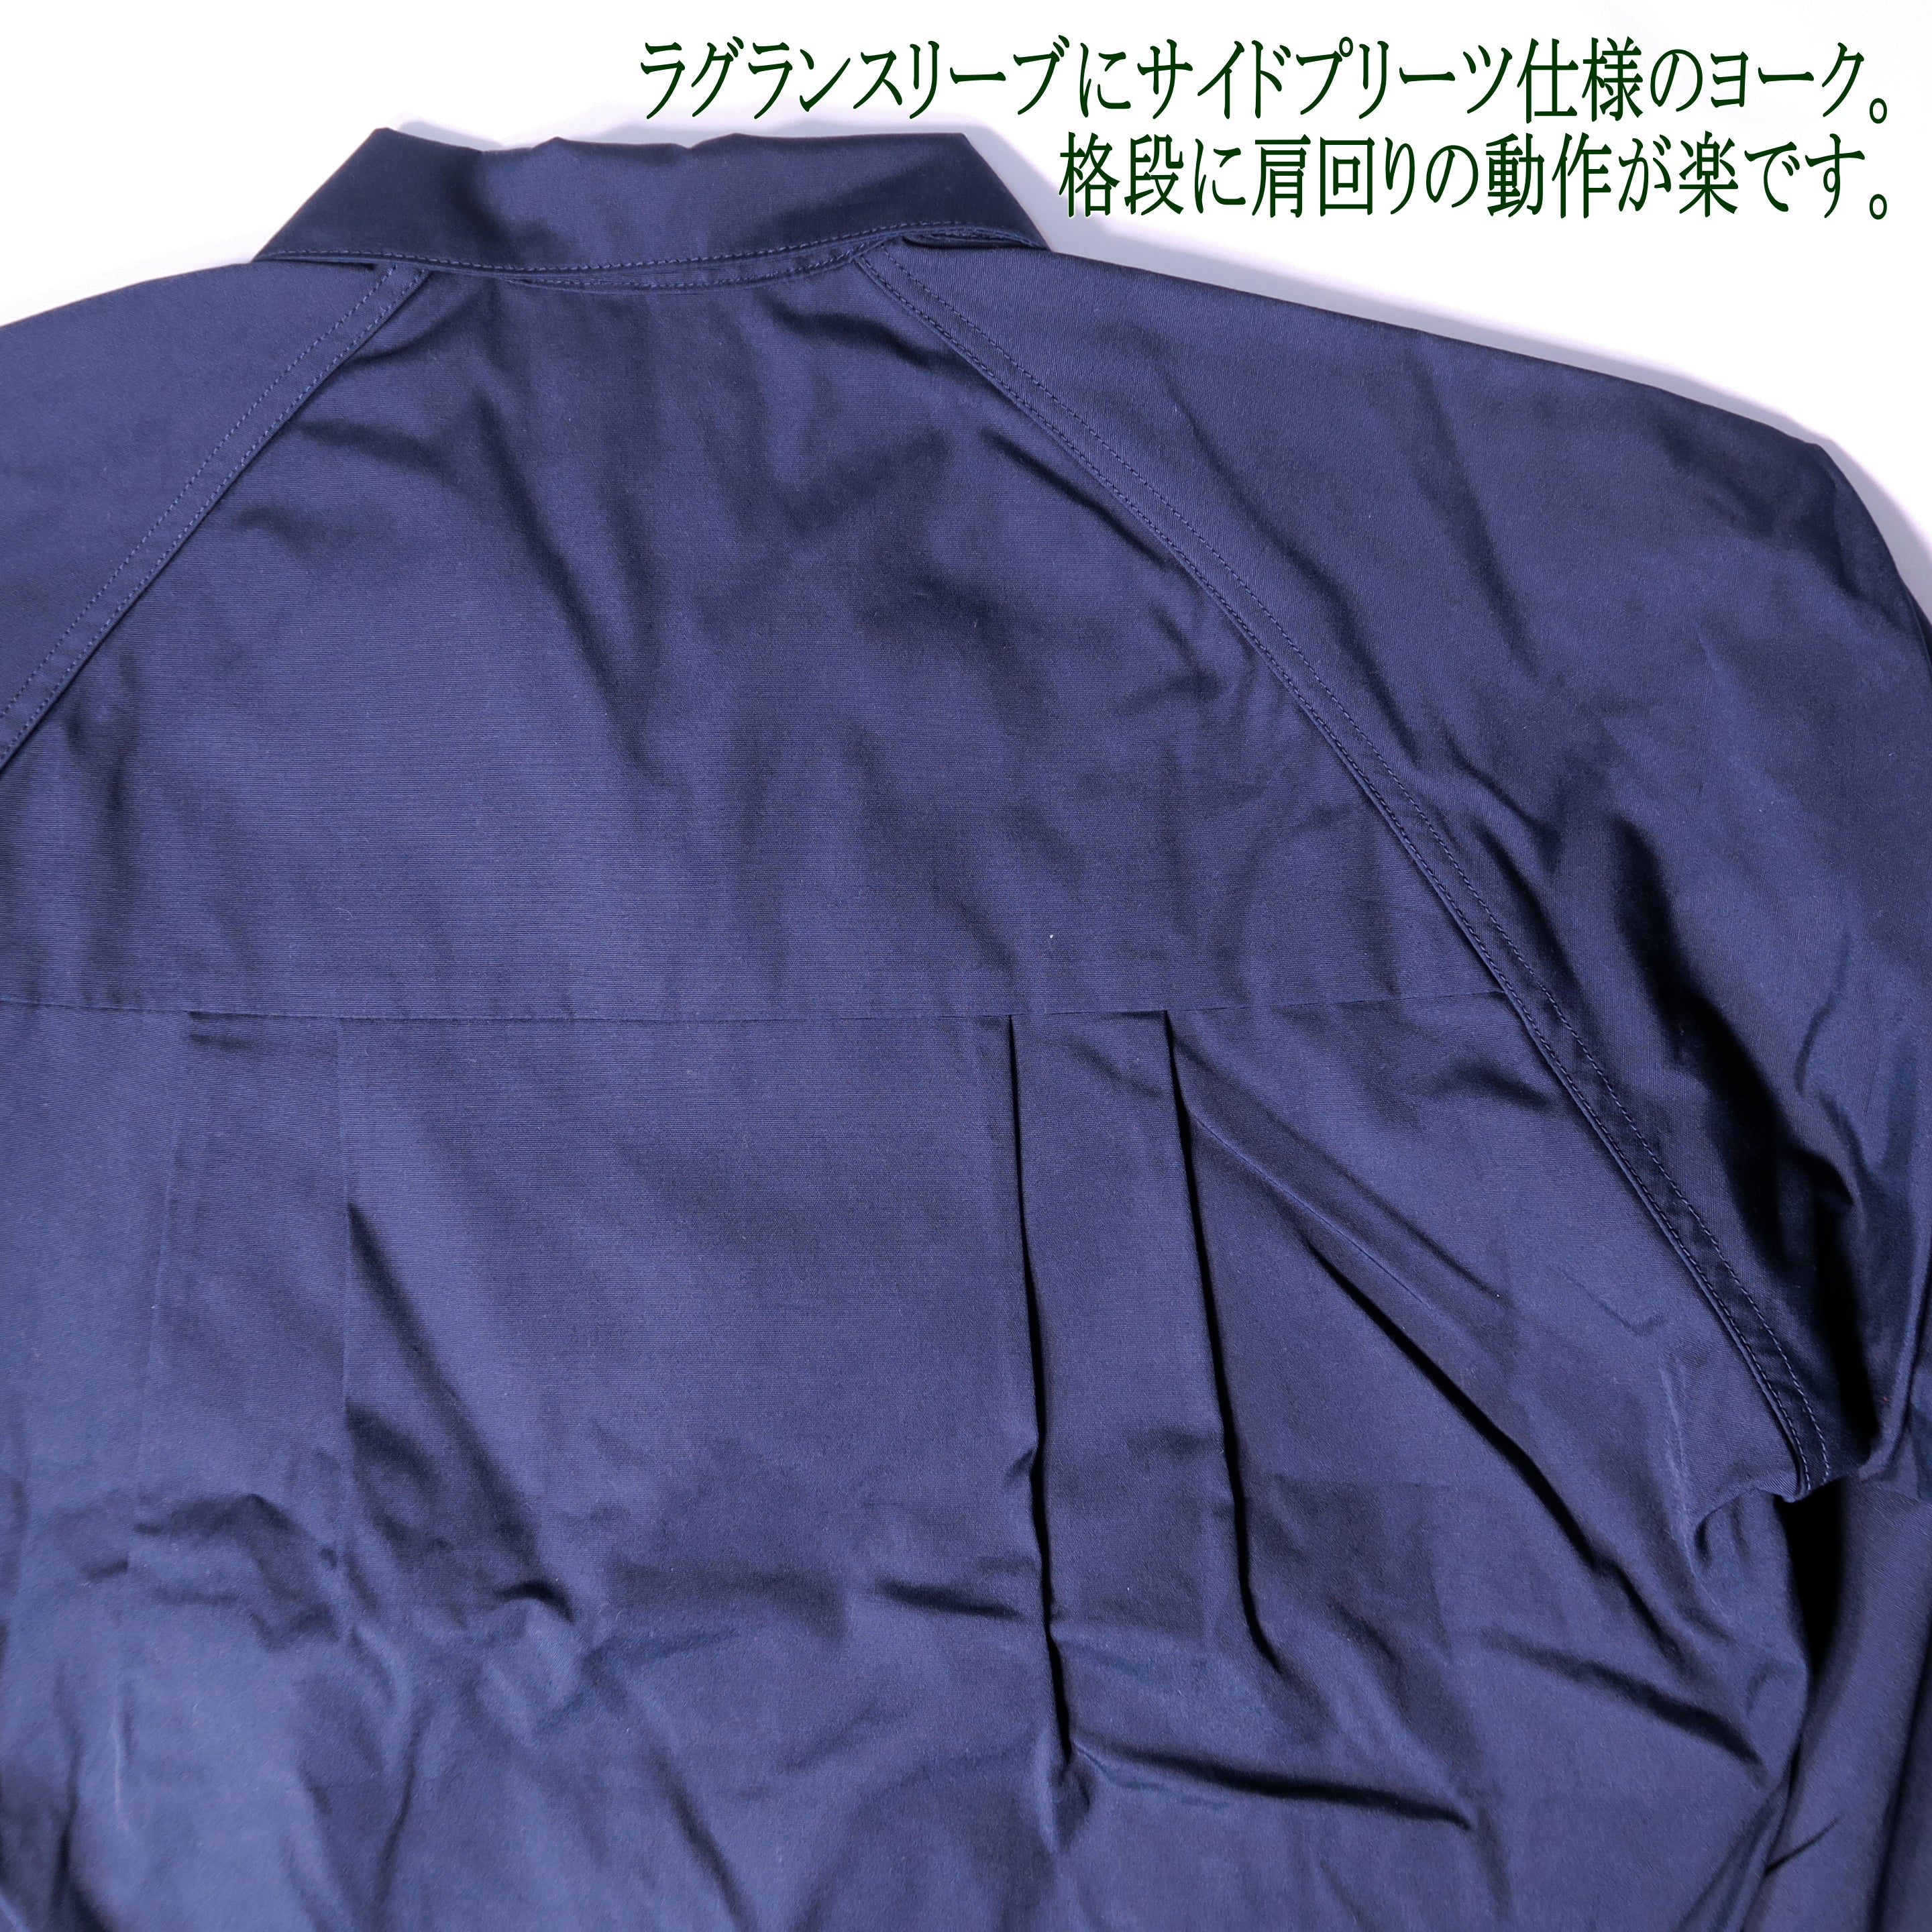 Harrington Jacket = type -Ⅰ =